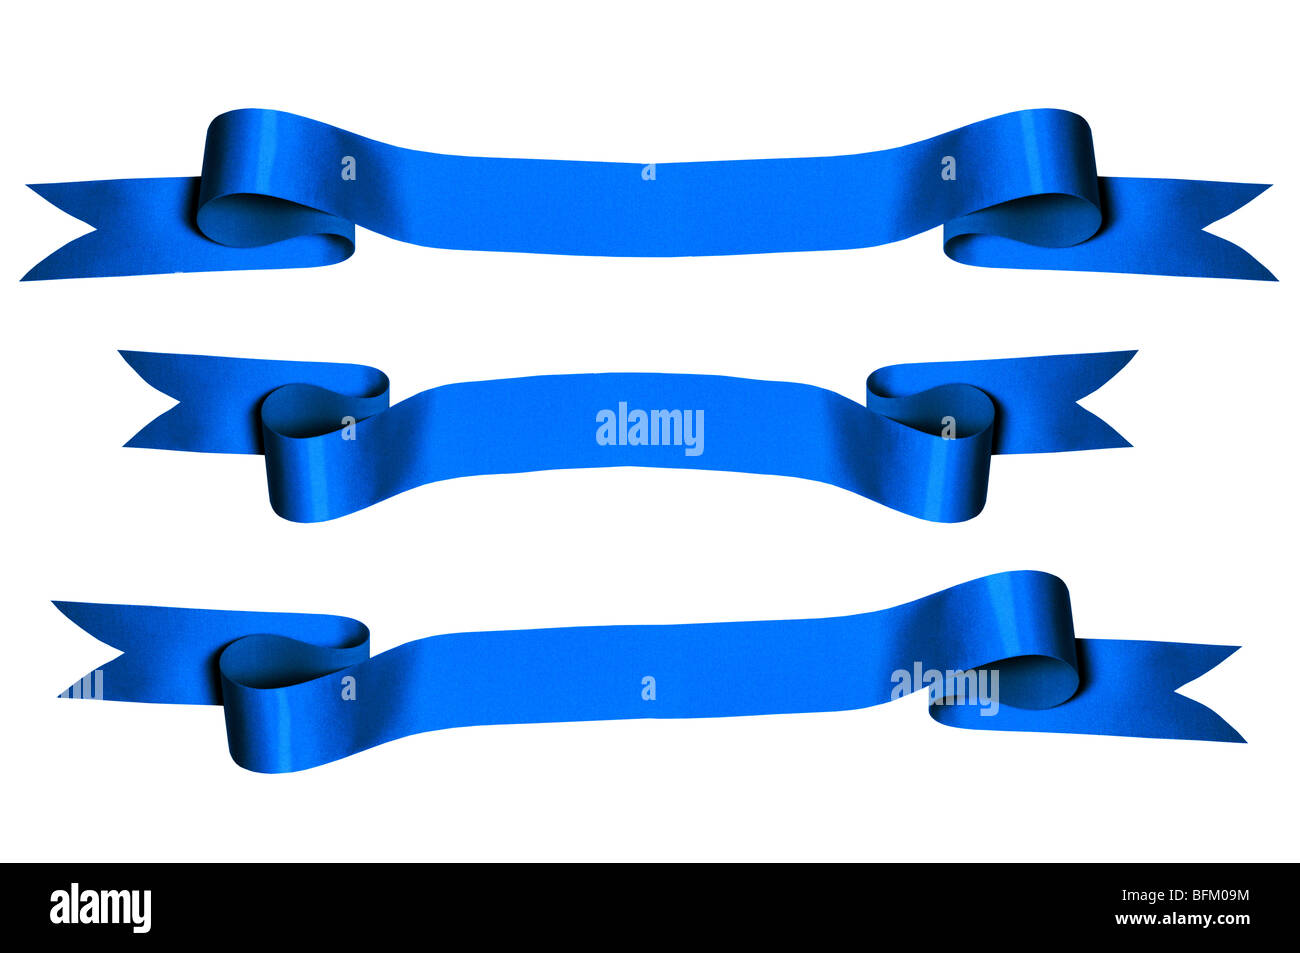 Blaue Bänder mit Bank Platz für Text - Foto Stockfoto